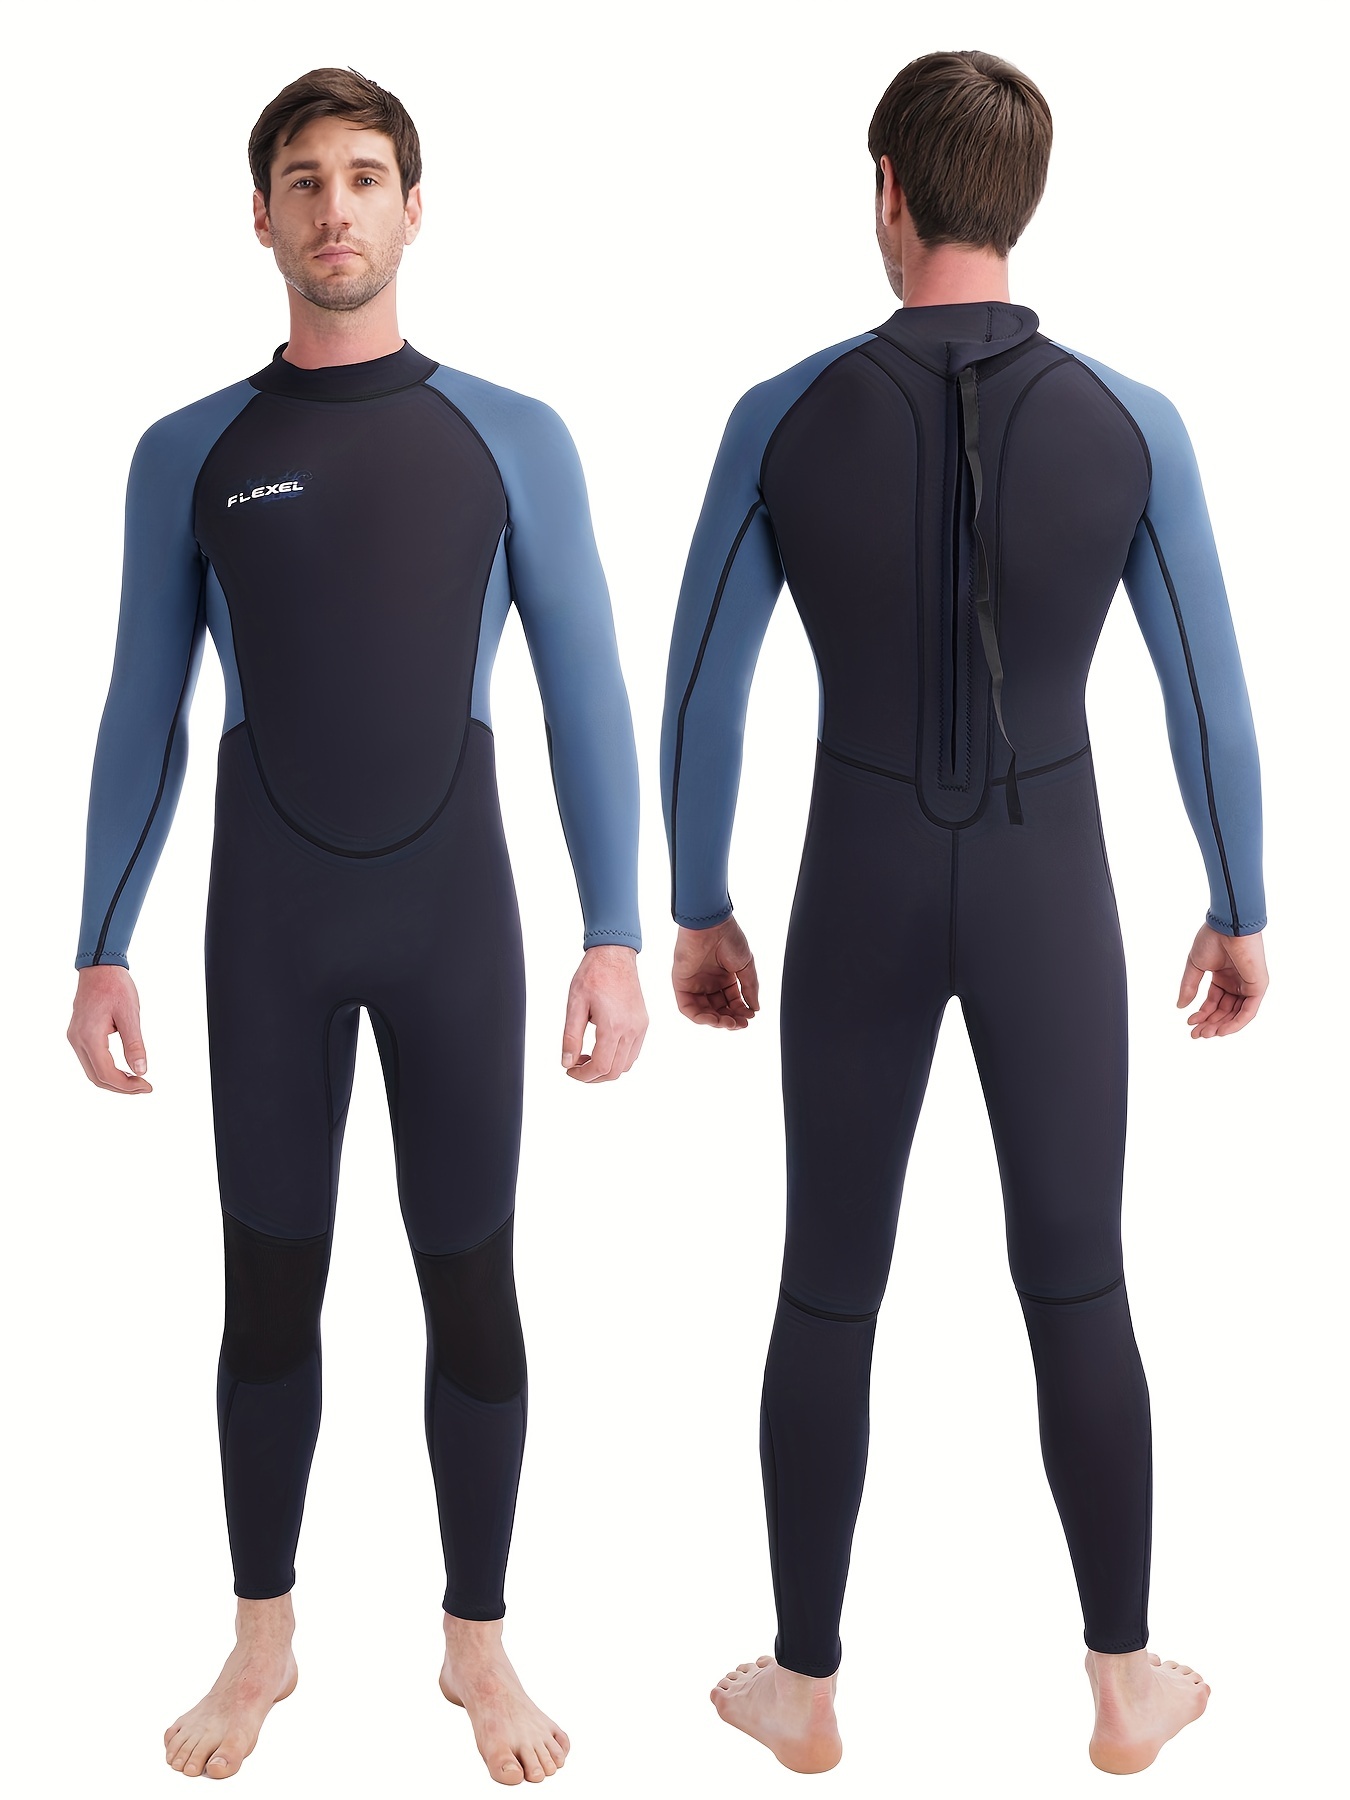 * Men's 3mm Neoprene Color Block Long Sleeve Skinny Stretch Wet Suit, Men's  Sunscreen Full Wet Suit For Surfing Swimming Sports